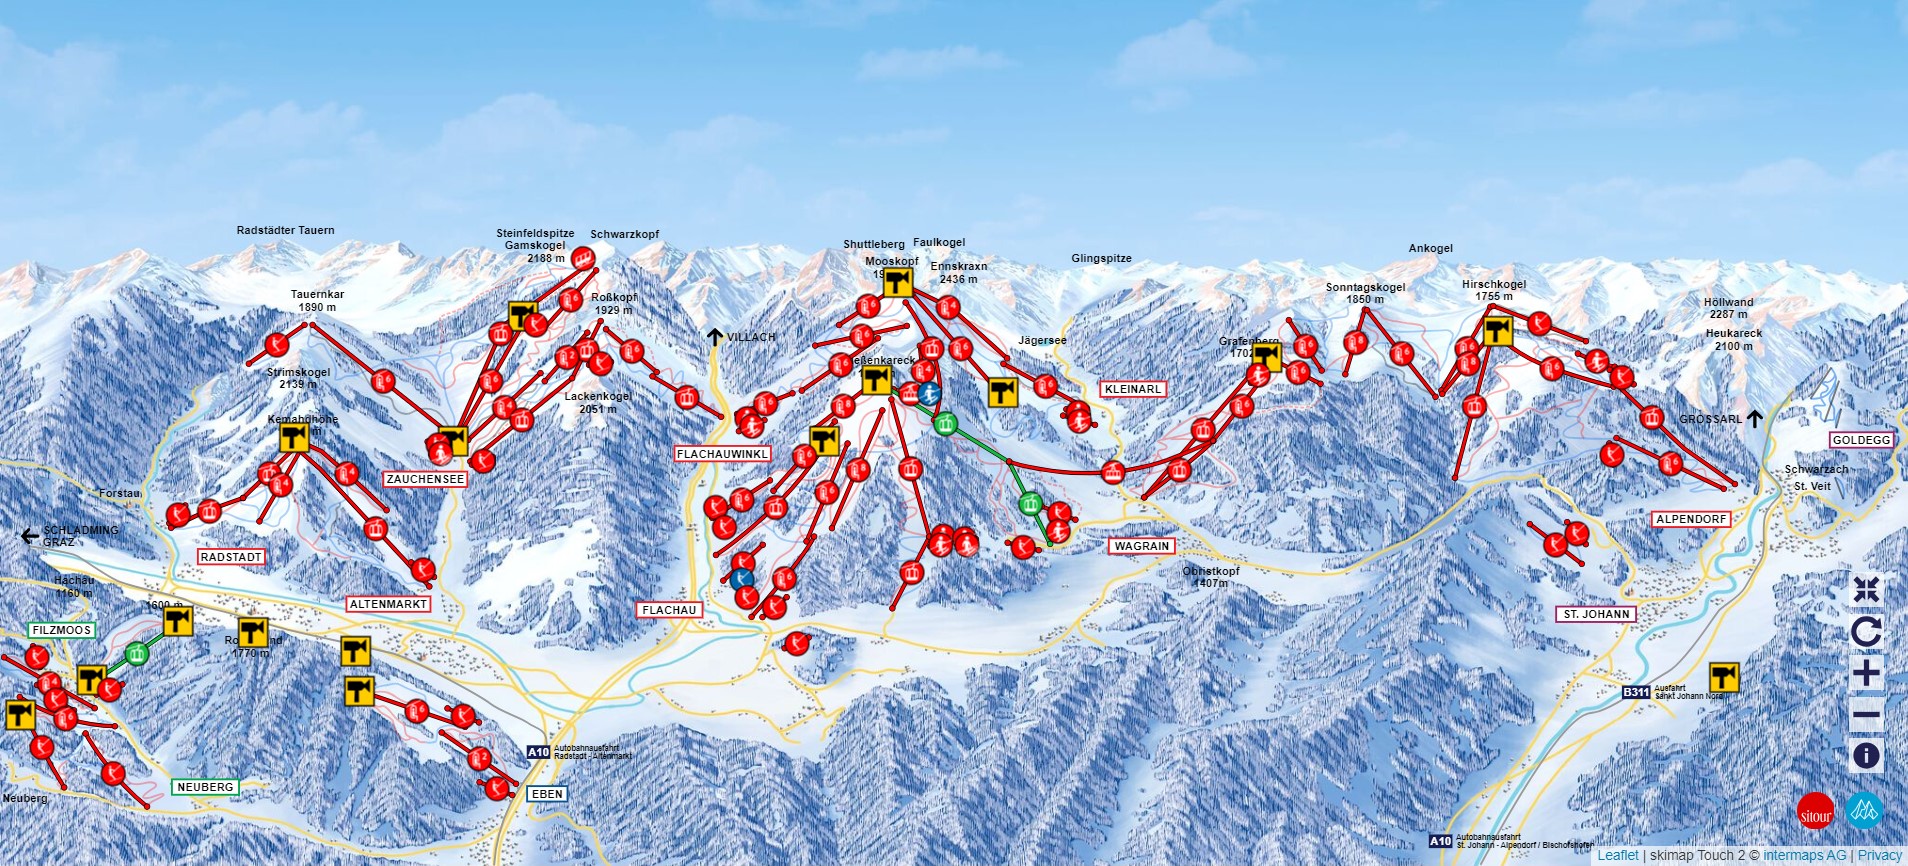 Snow Space Salzburg Ski Trail Map